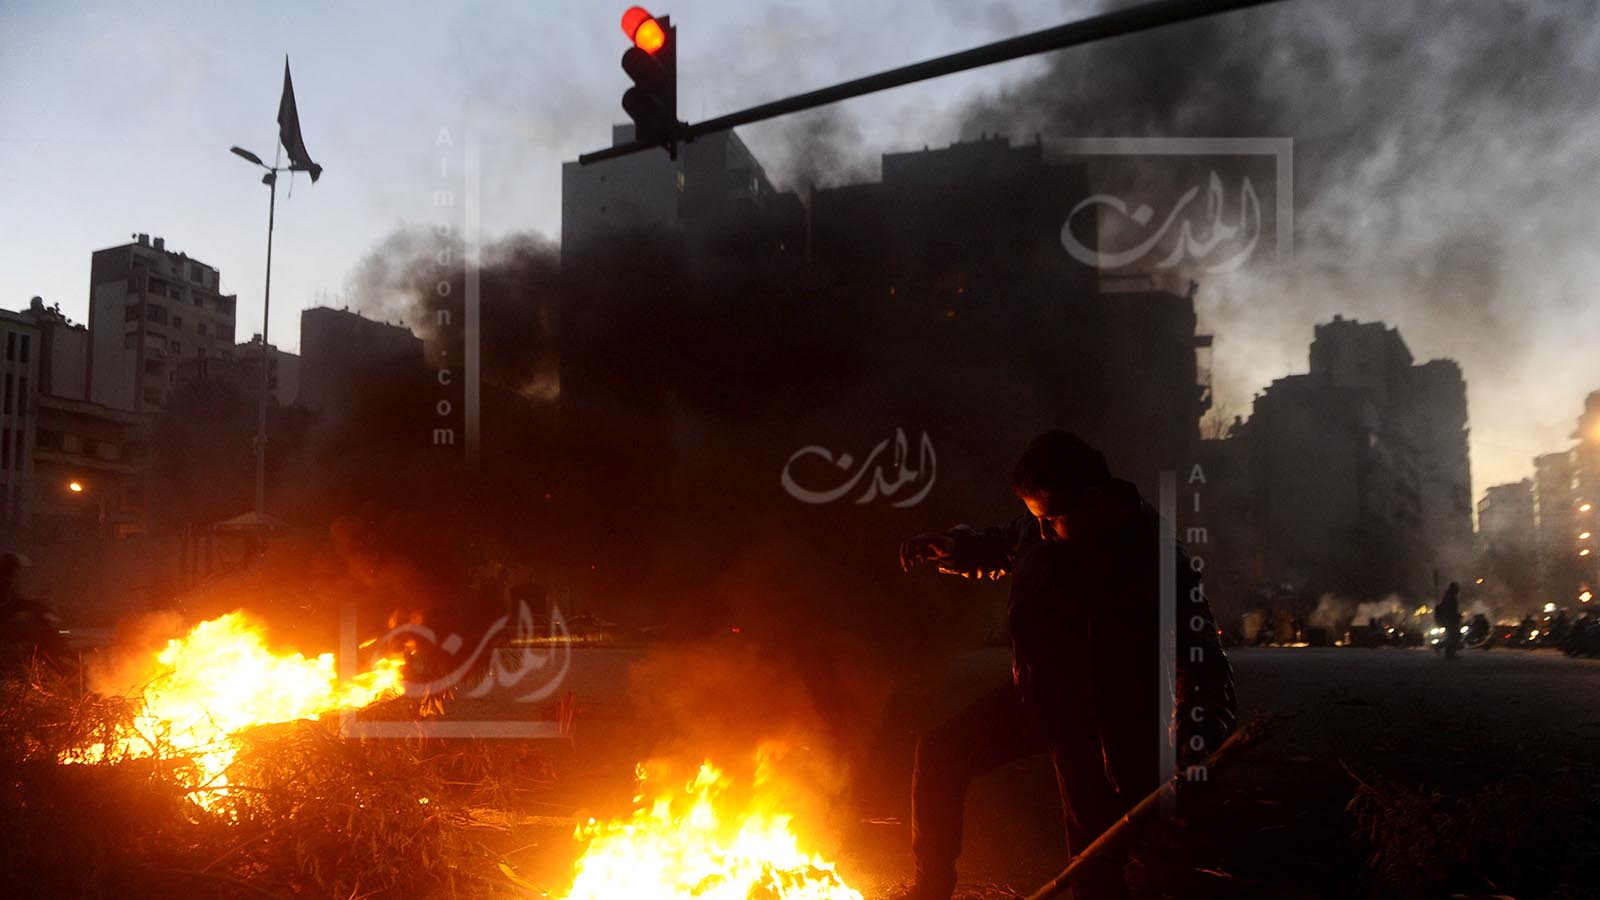 وقائع طرابلس وإذلال اللبنانيين: الثورة المنطفئة ترهيباً ويأساً